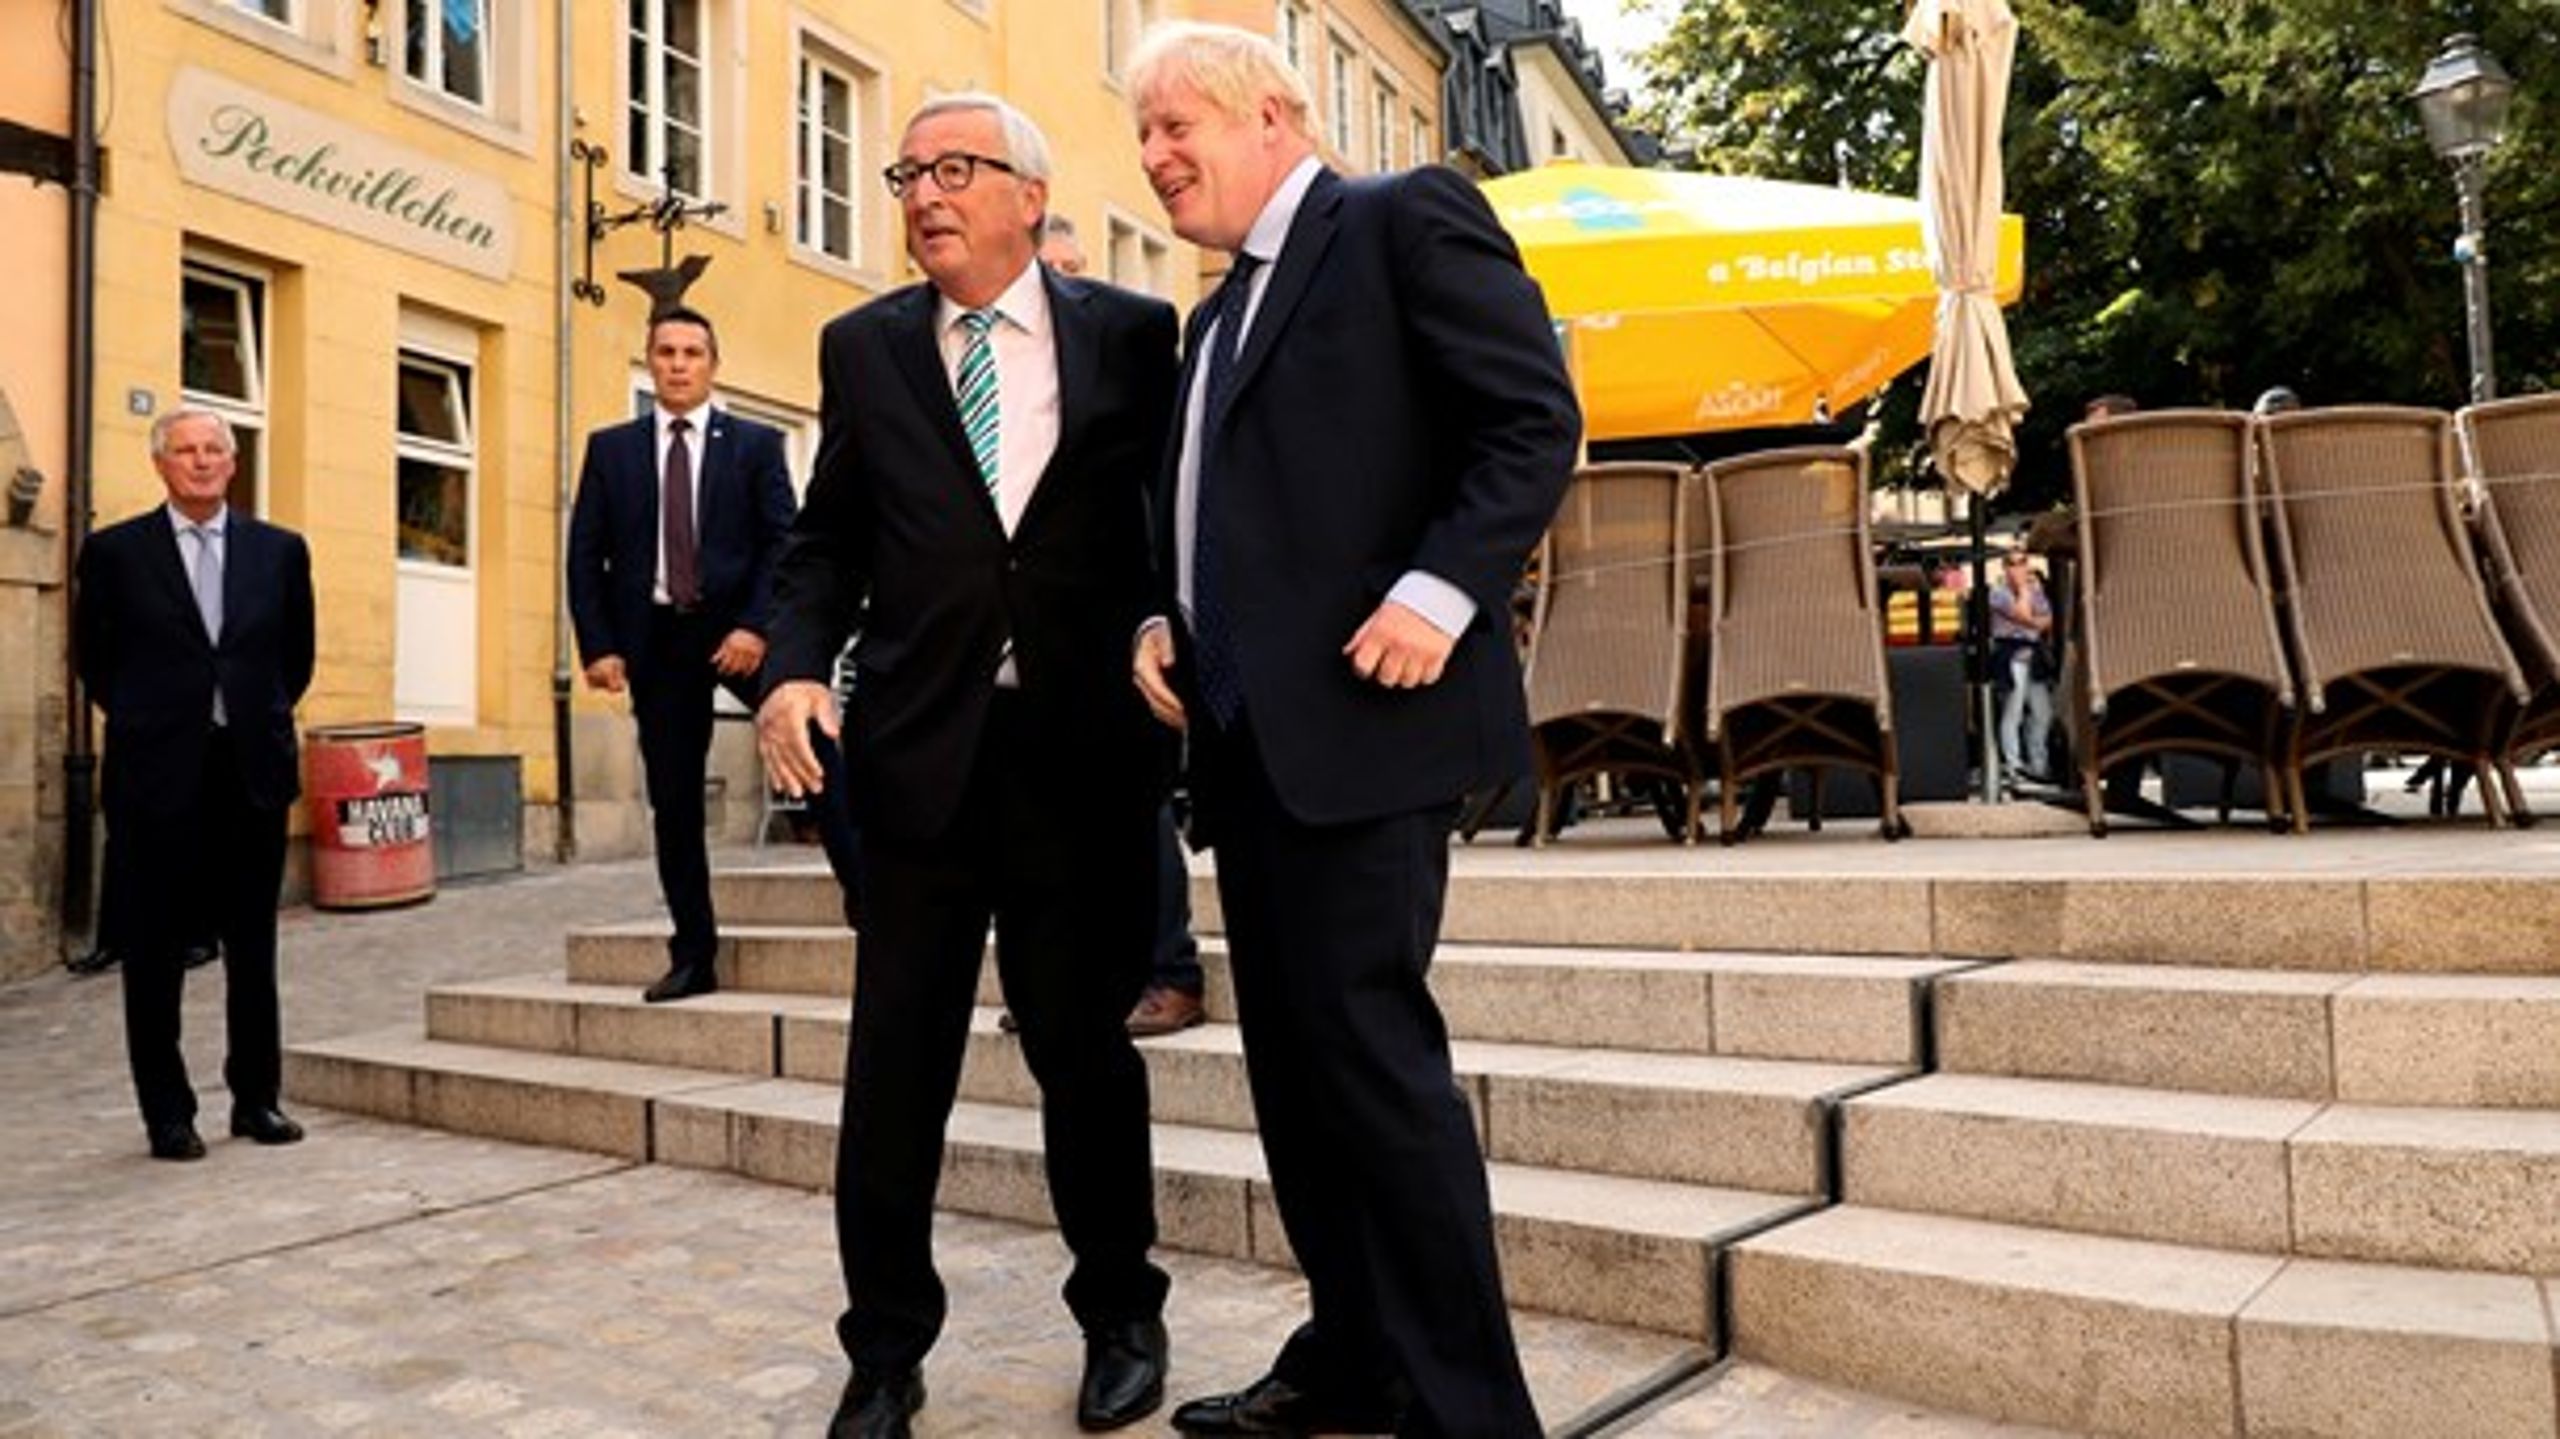 EU's Brexitforhandler Michel Barnier (yderst til venstre) og Storbritanniens Brexit-minister Stephen Barclay deltog også i mødet.